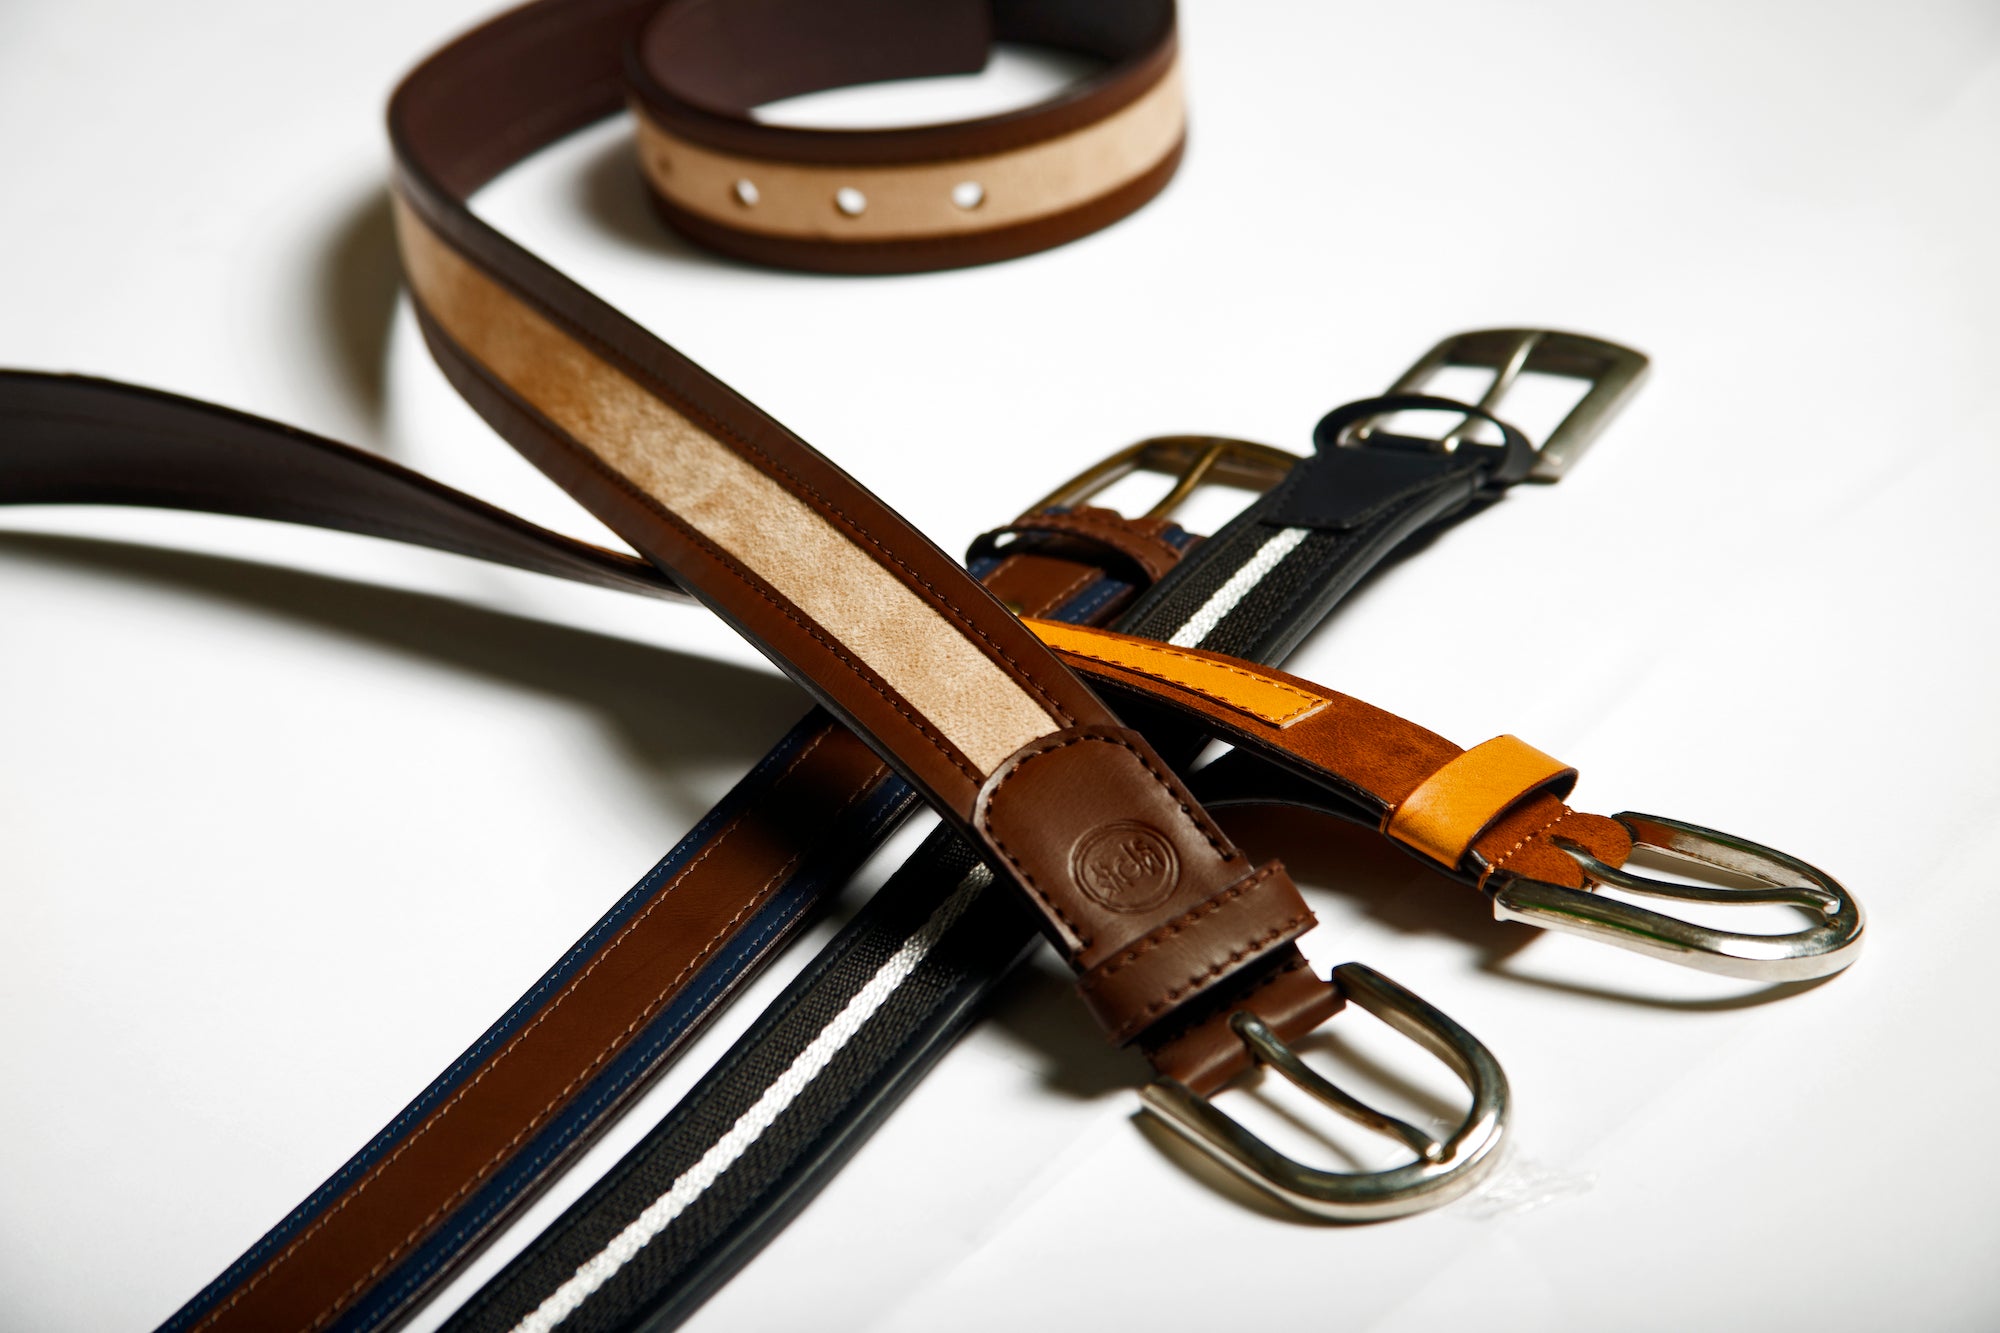 New Brand designer belts men high-quality genuine leather belt man- FunkyTradition Black